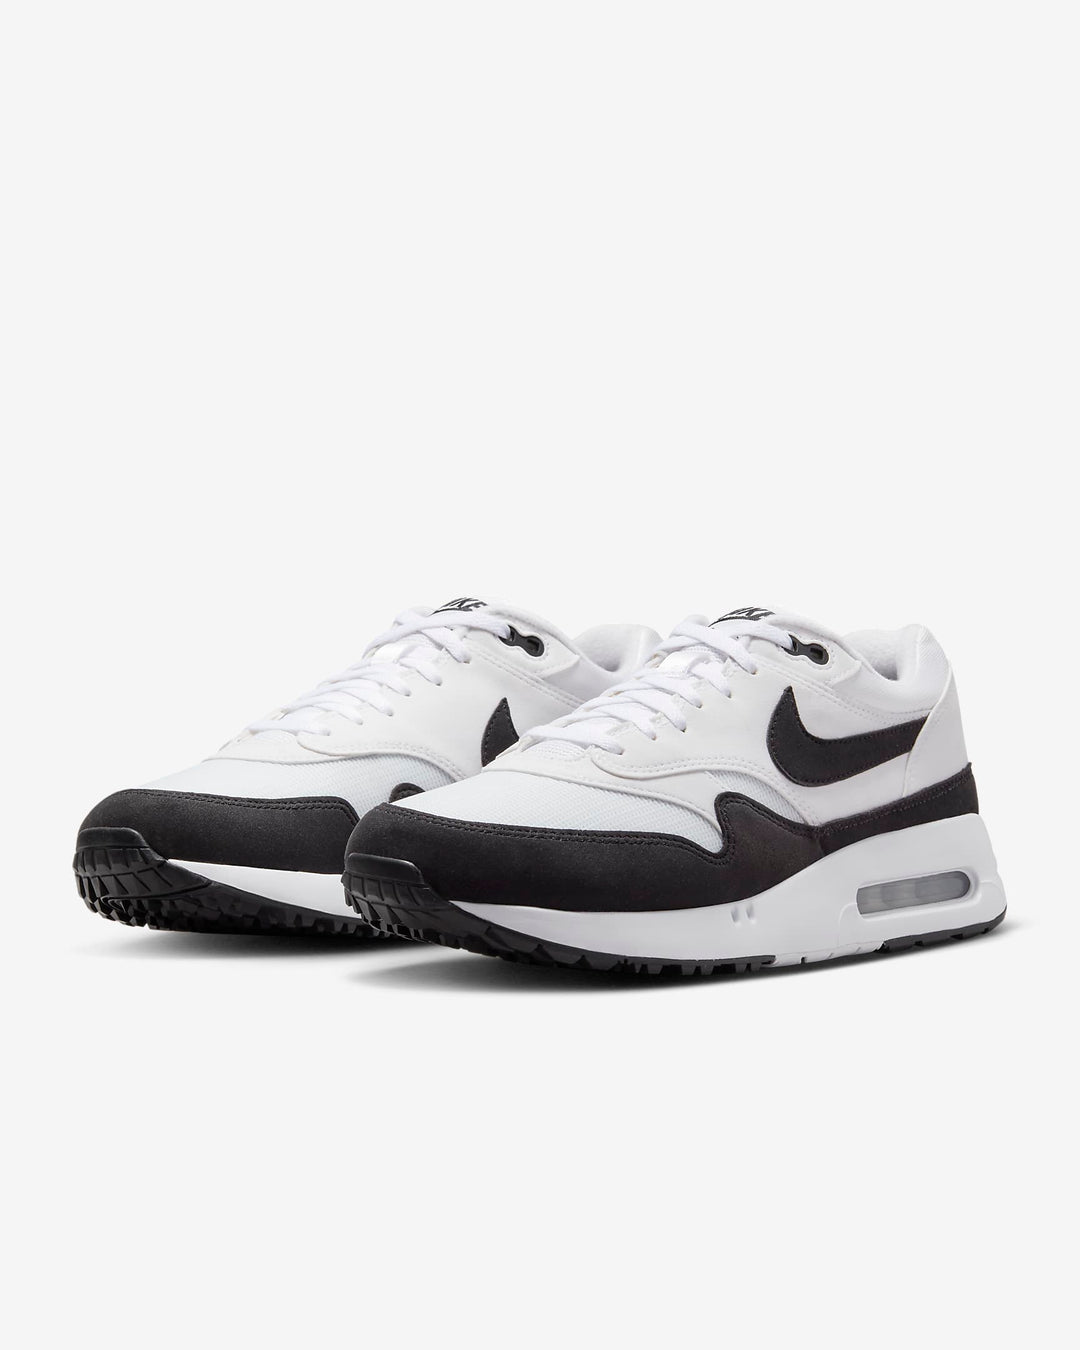 Giày Nike Air Max 1 '86 OG G Men Golf Shoes #White Black